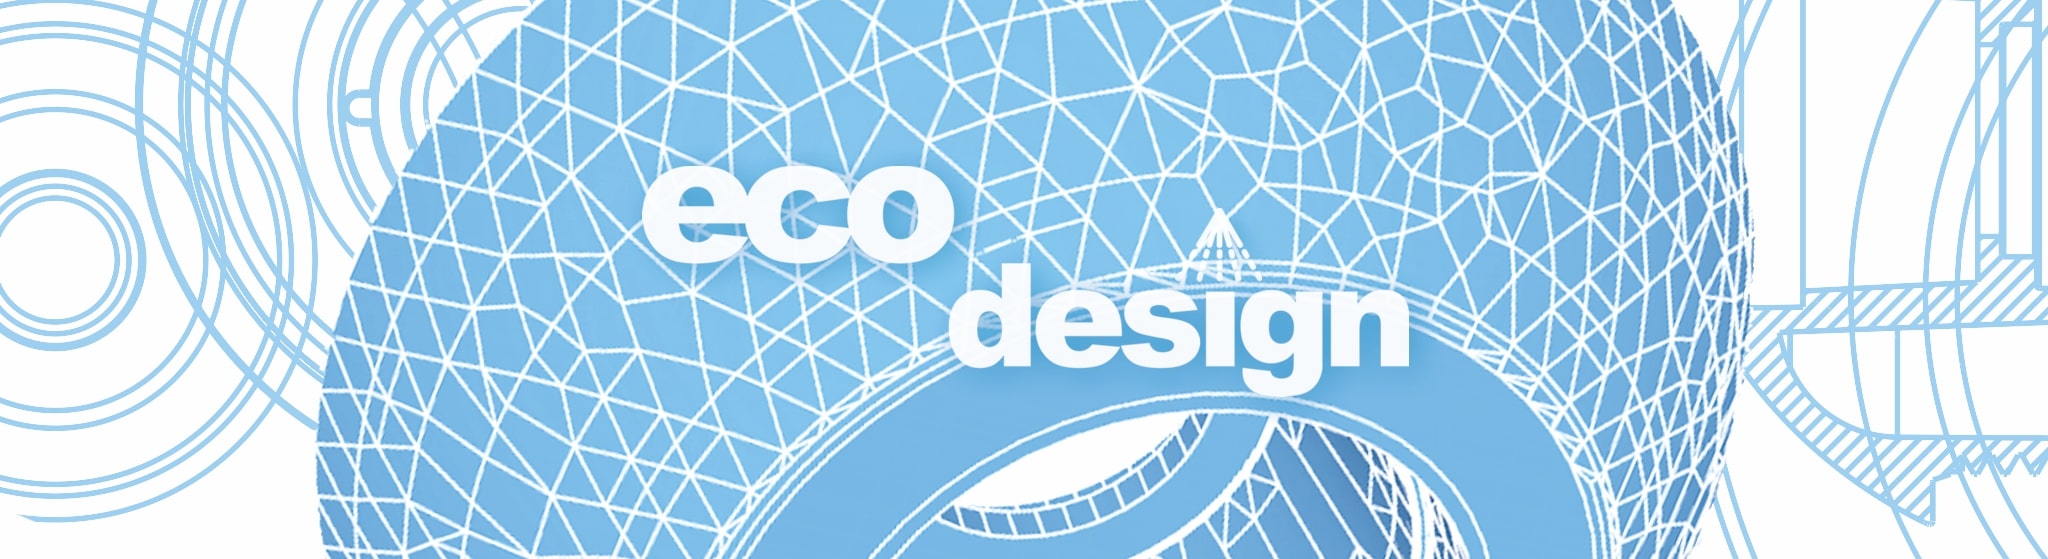 eine Geometrische Zeichnung des Kopfteils der Swissclima mit Schriftzug "eco design"